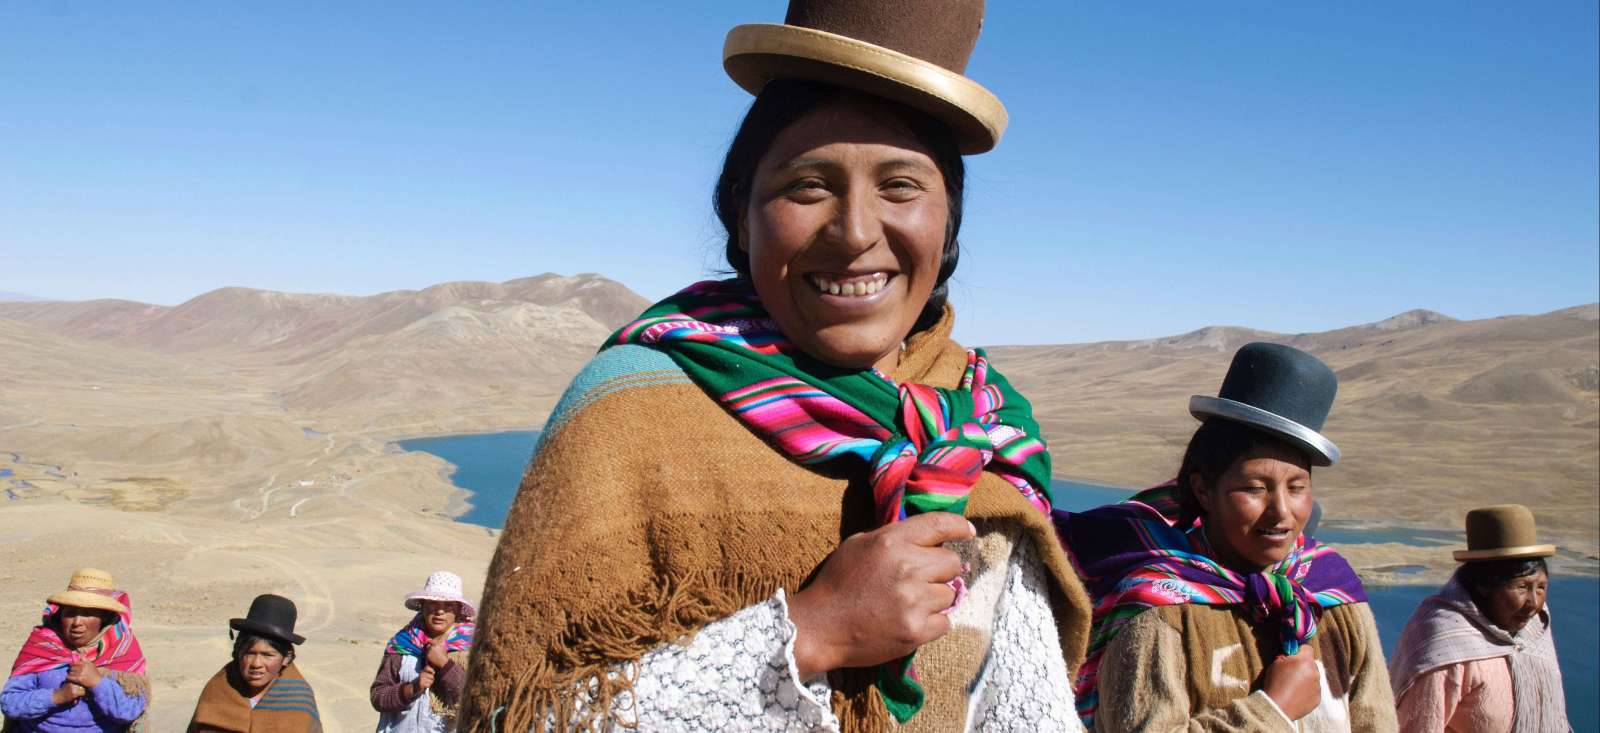 Voyage découverte - La Bolivie sans concession